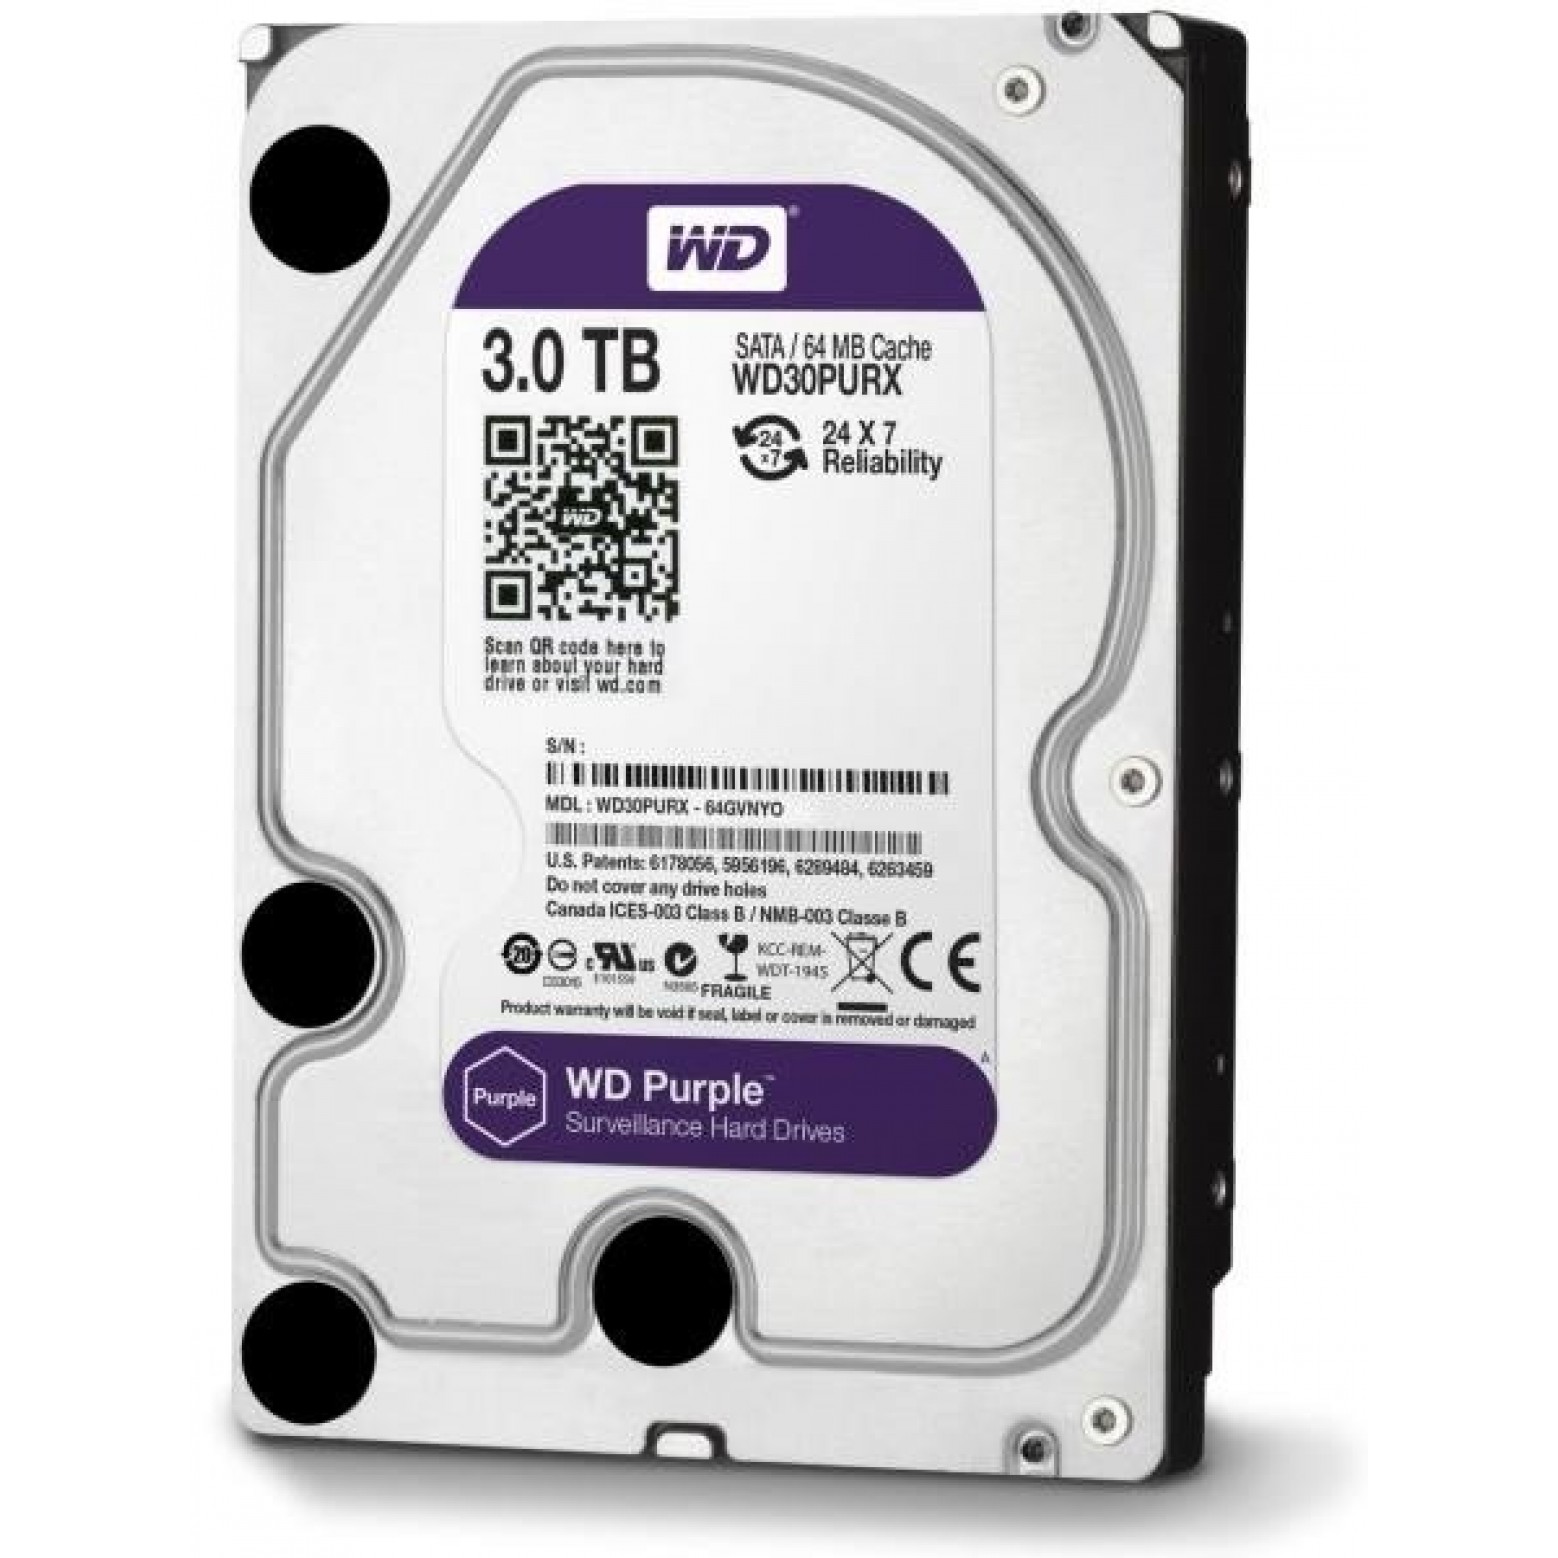 Western Digital Purple 3TB HDD